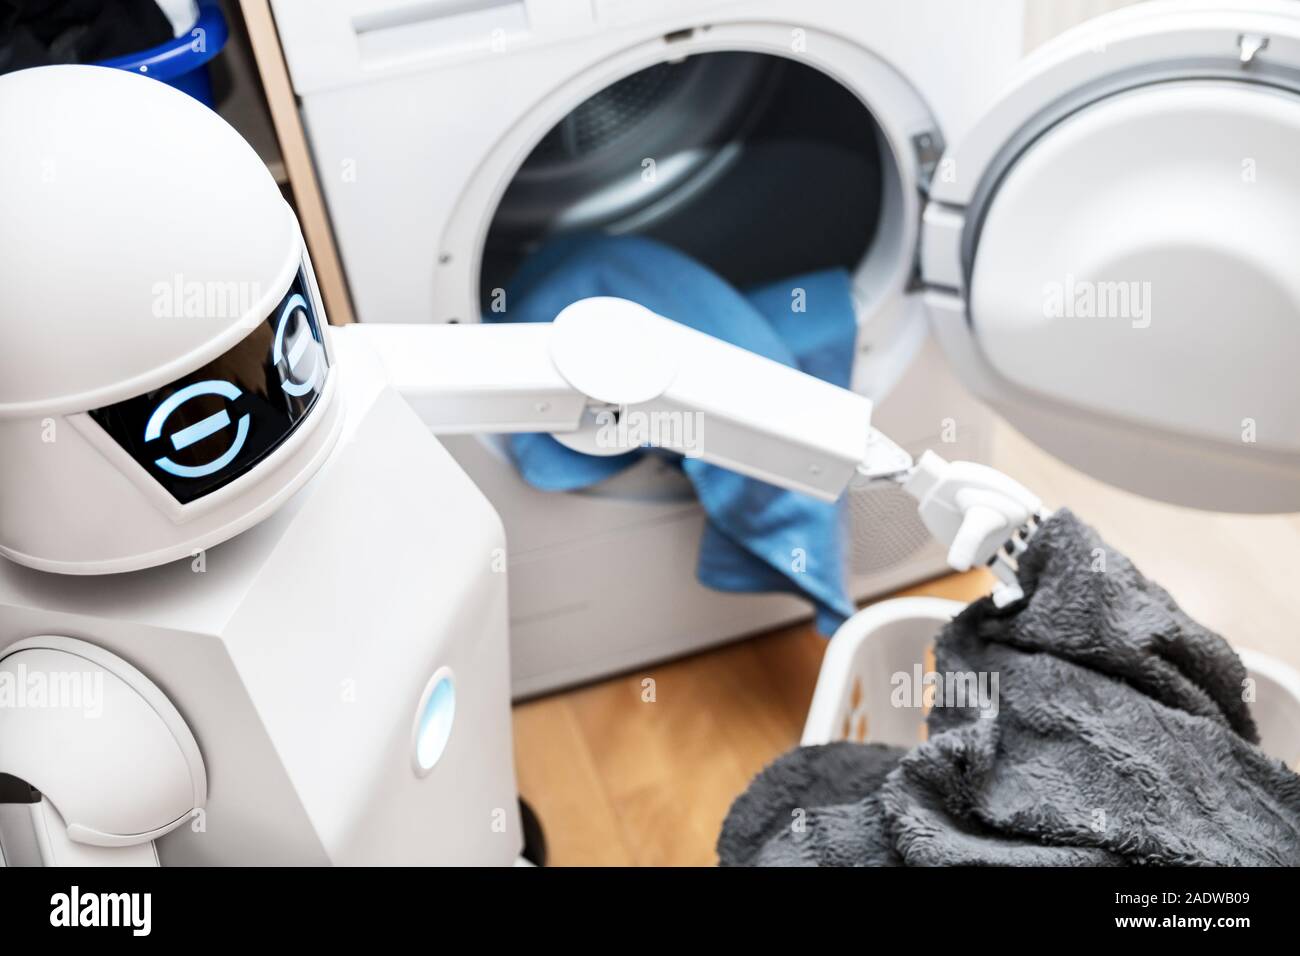 Ambient Assisted Living o robot cyborg sta lavorando in ambiente domestico. robot è mettere alcuni vestiti nell'essiccatore Foto Stock